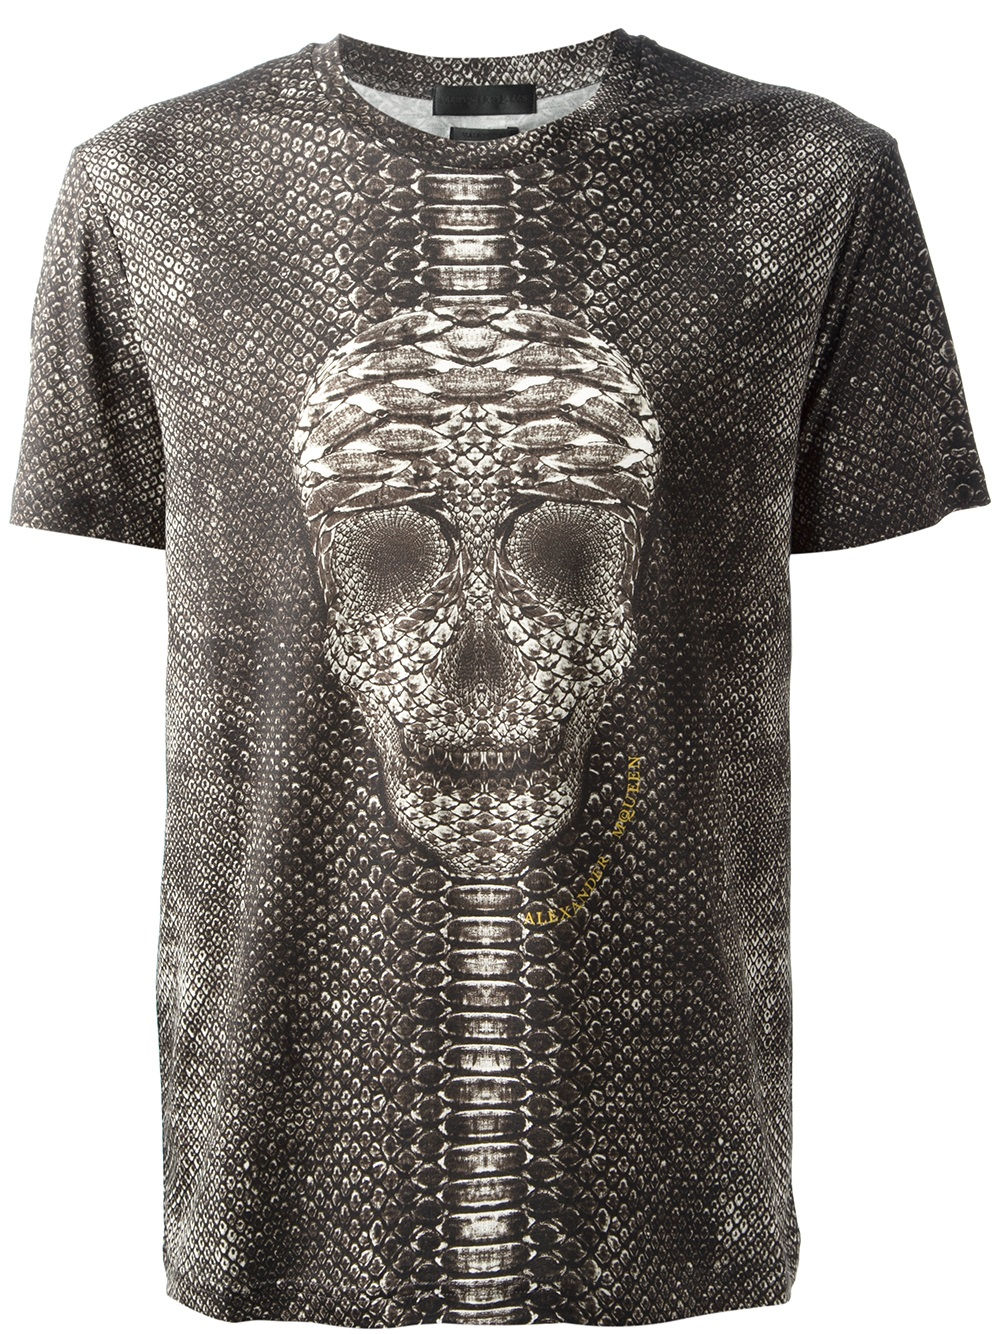 Lyst - Alexander Mcqueen Snake Skin Print Skull T-shirt in Black for Men